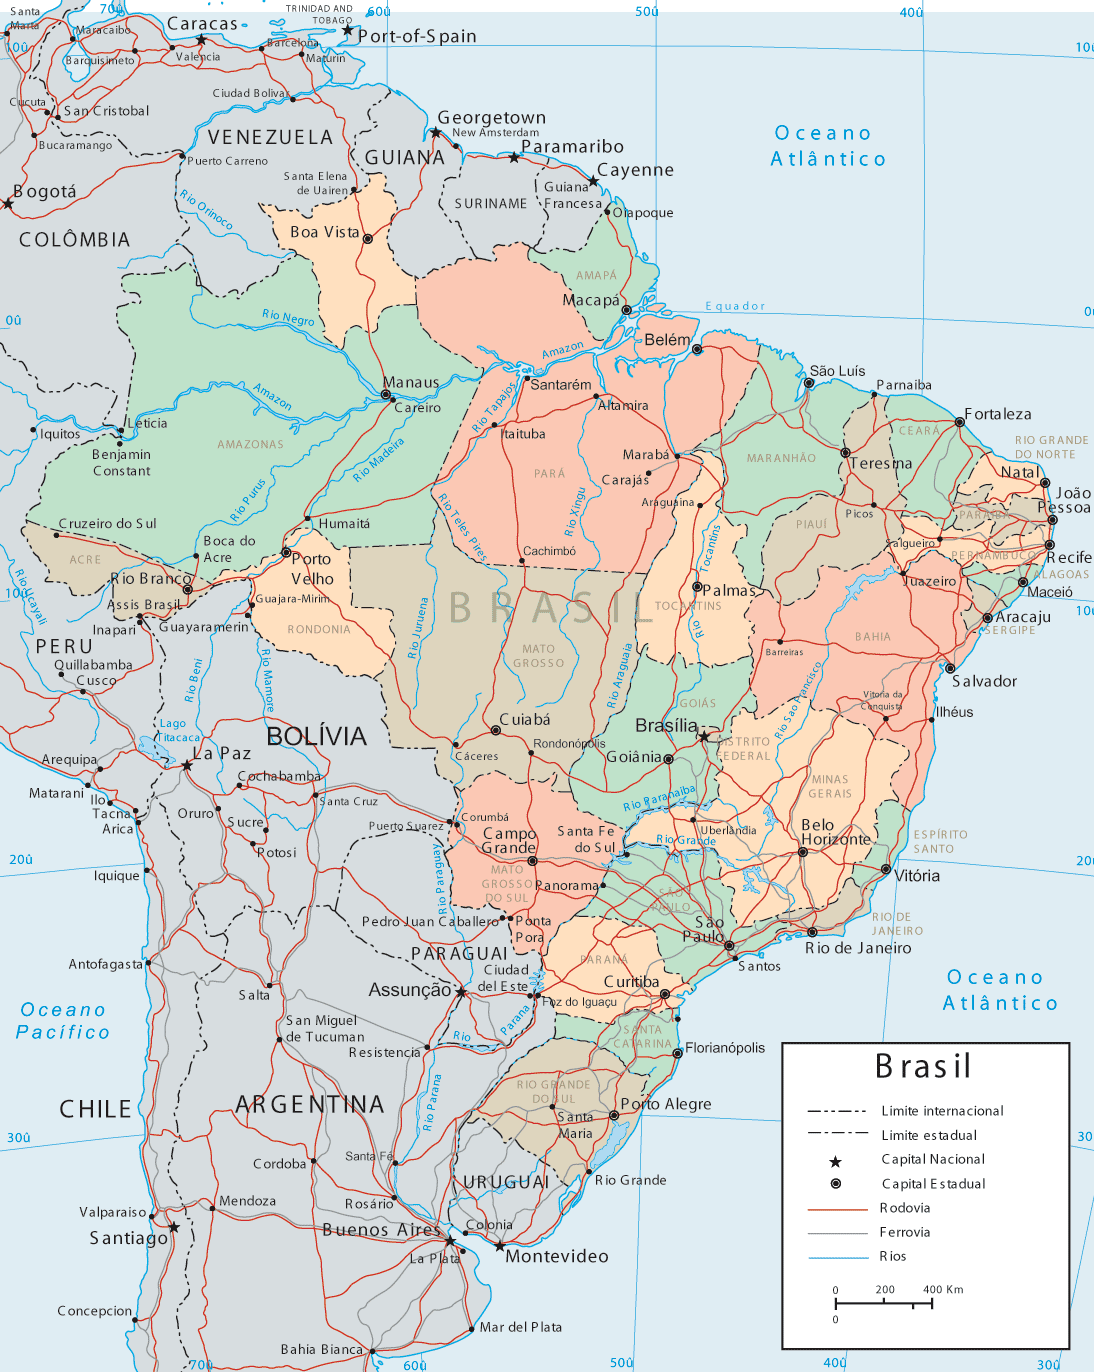 Mapa Político-Administrativo do Brasil